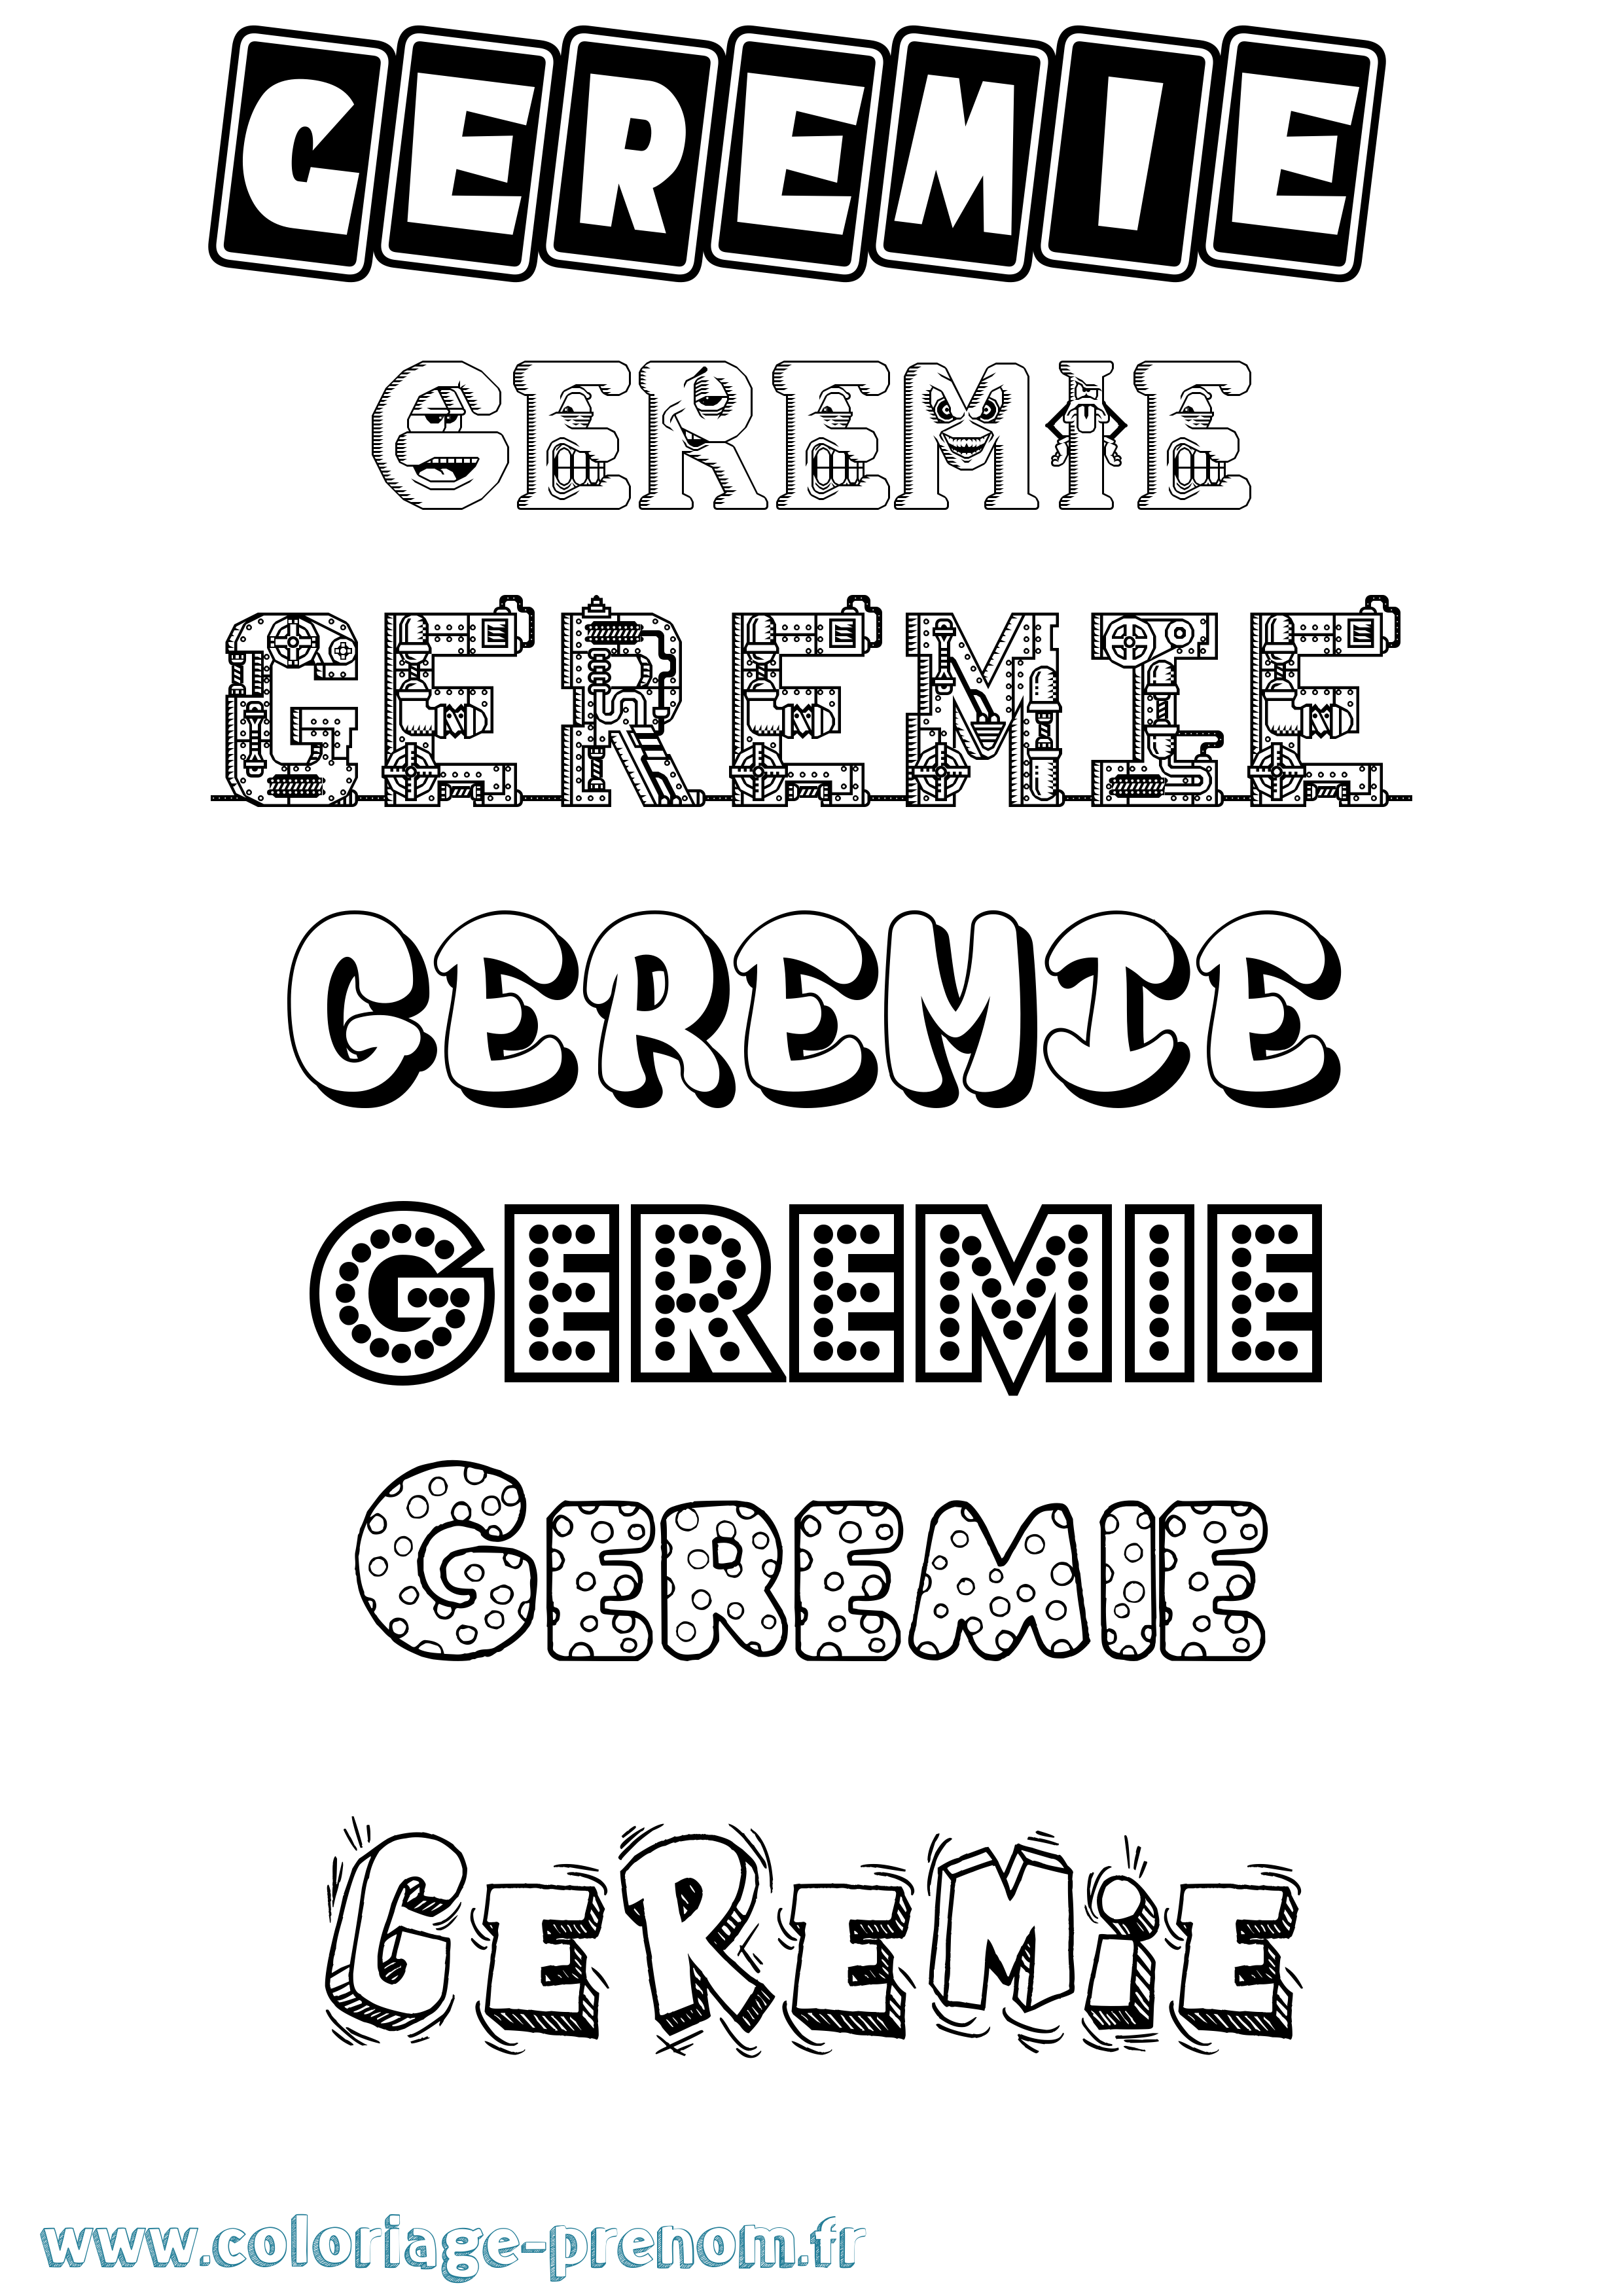 Coloriage prénom Geremie Fun